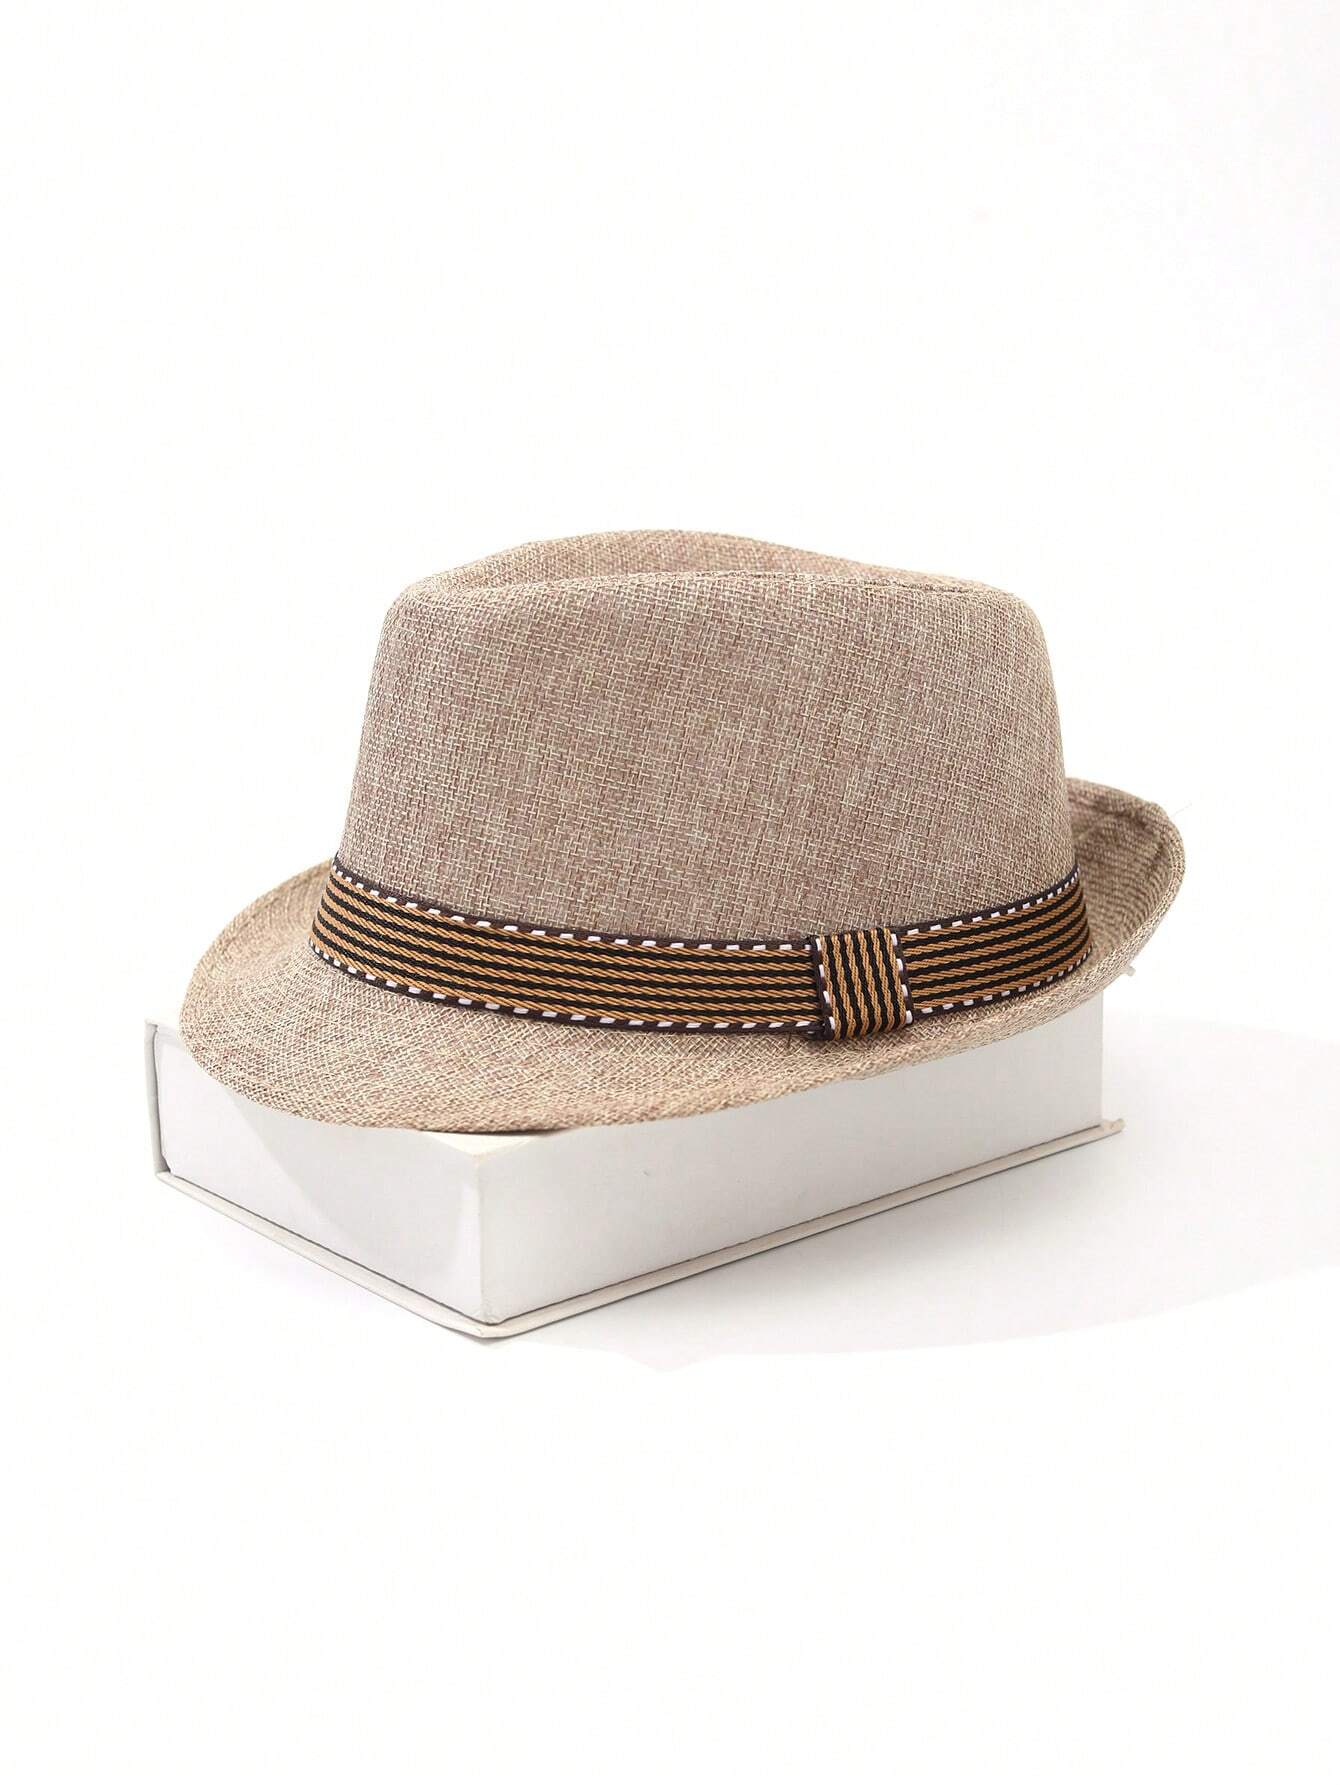 Beige Linen Fedora Hat - British Casual Gentleman's Style